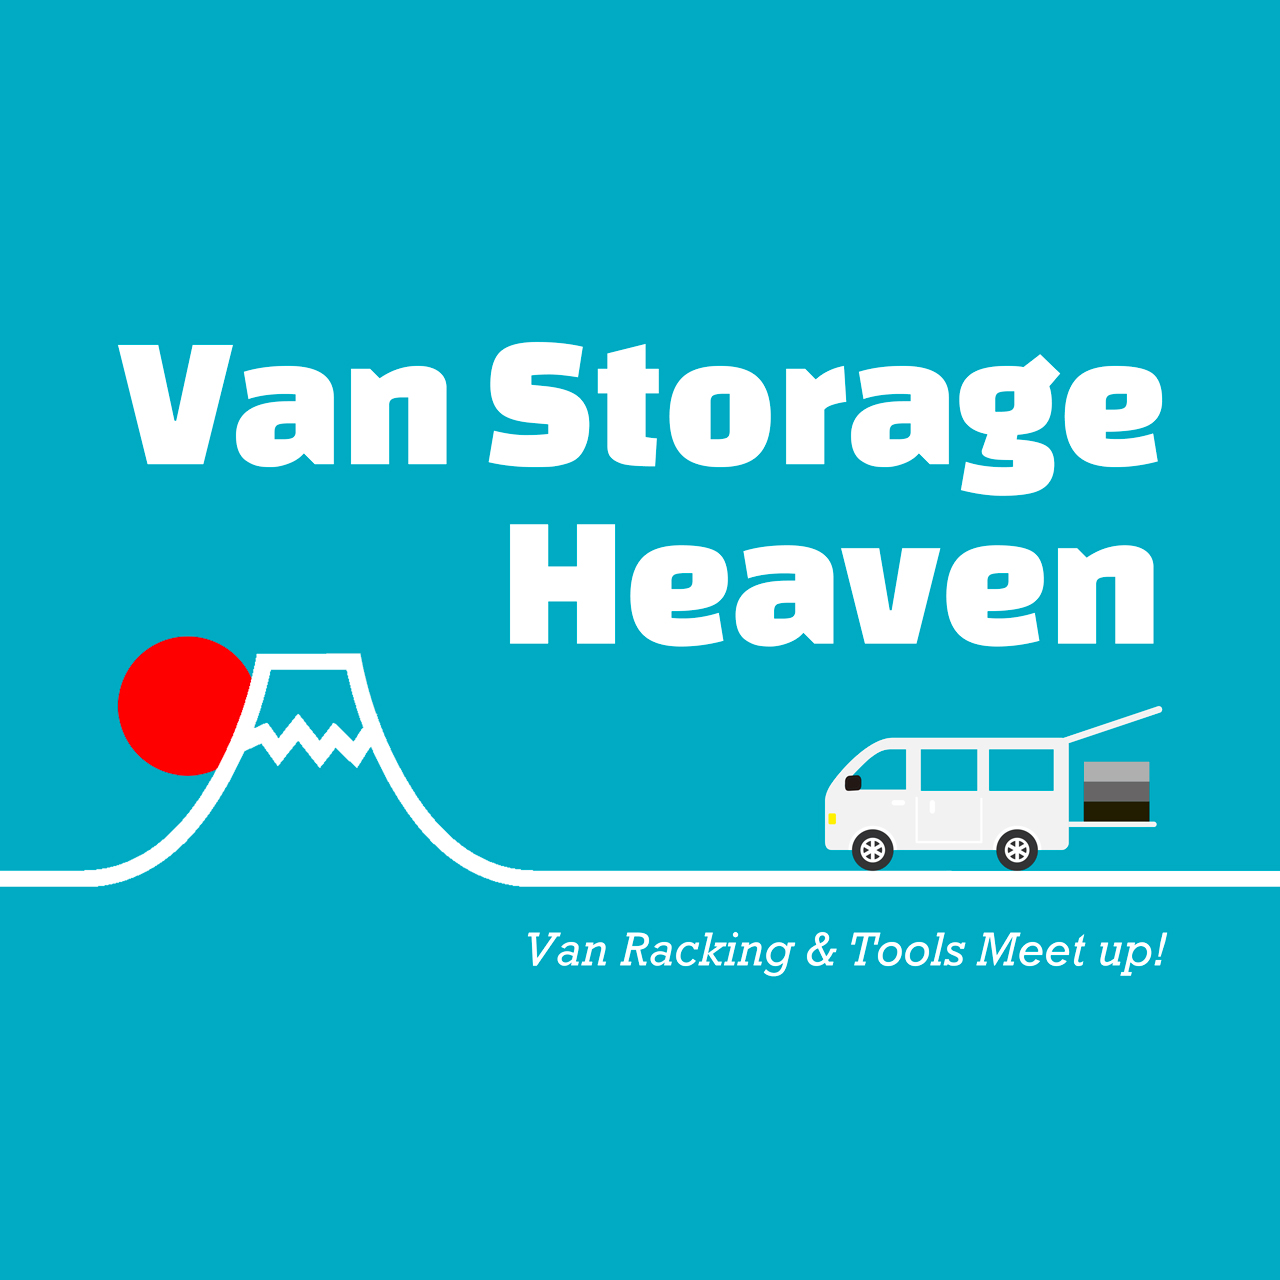 Van Storage Heaven